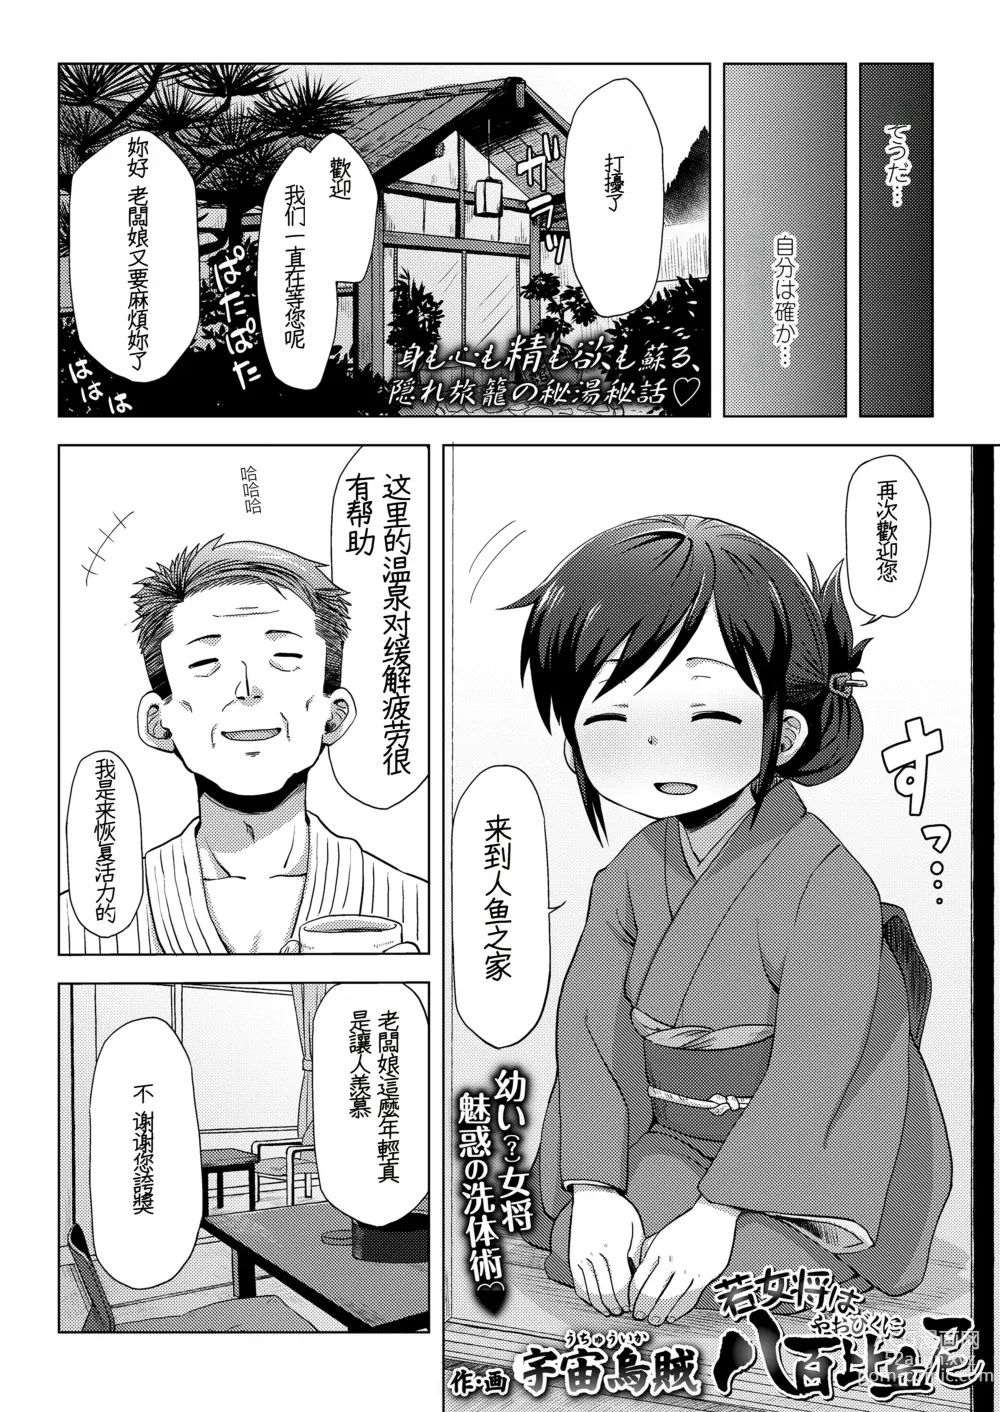 Page 4 of manga waka okami ha yaobikuni